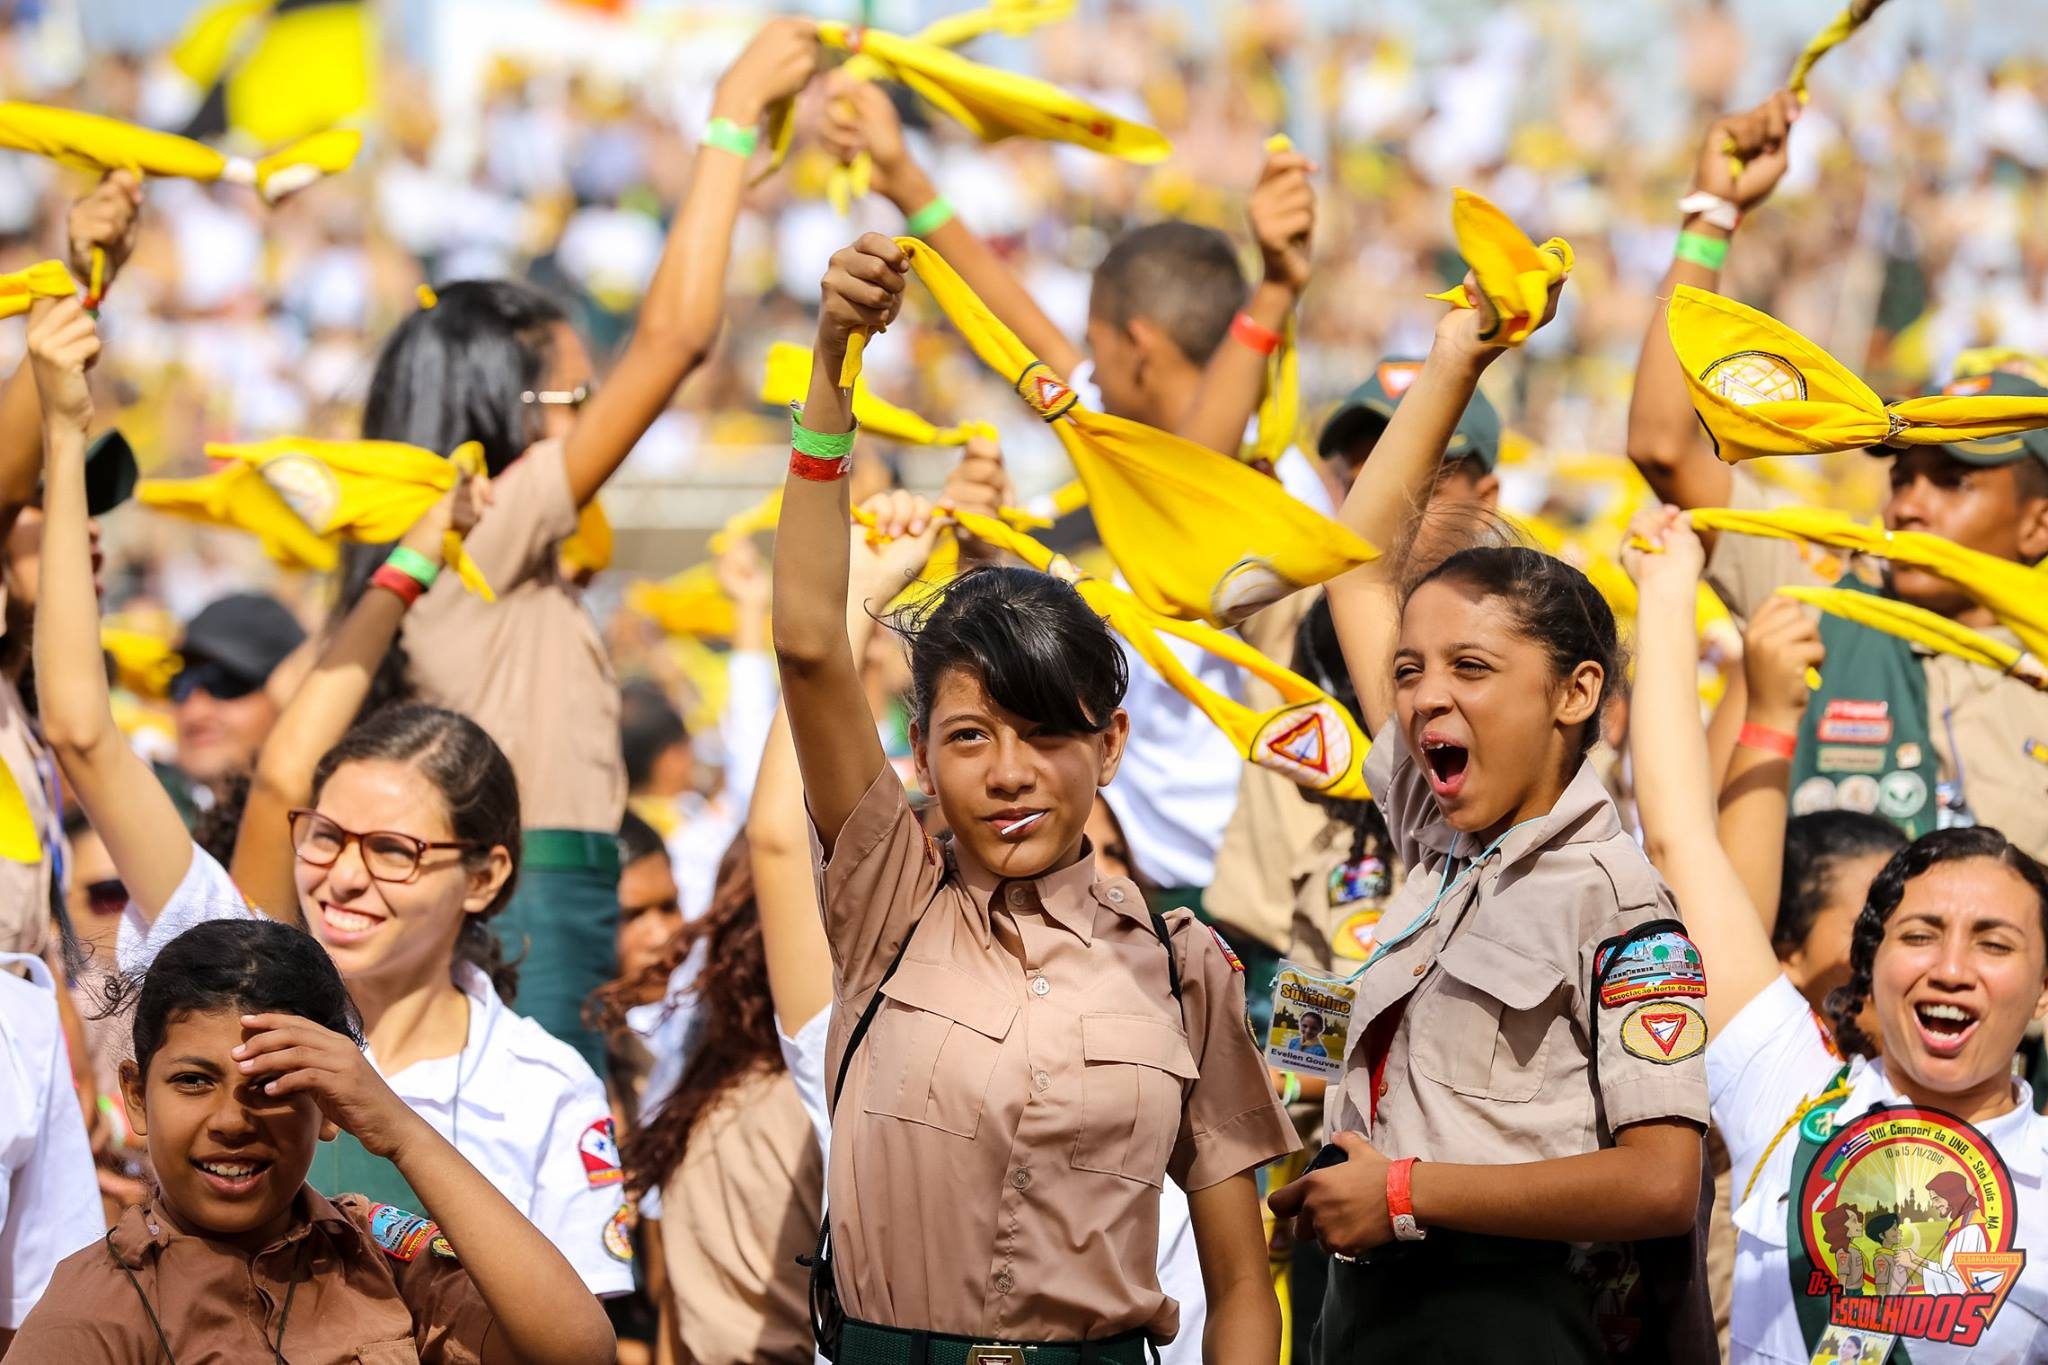 Os desbravadores do Pará, Amapá e Maranhão formaram um verdadeiro exército de juvenis e adolescentes na capita São Luís